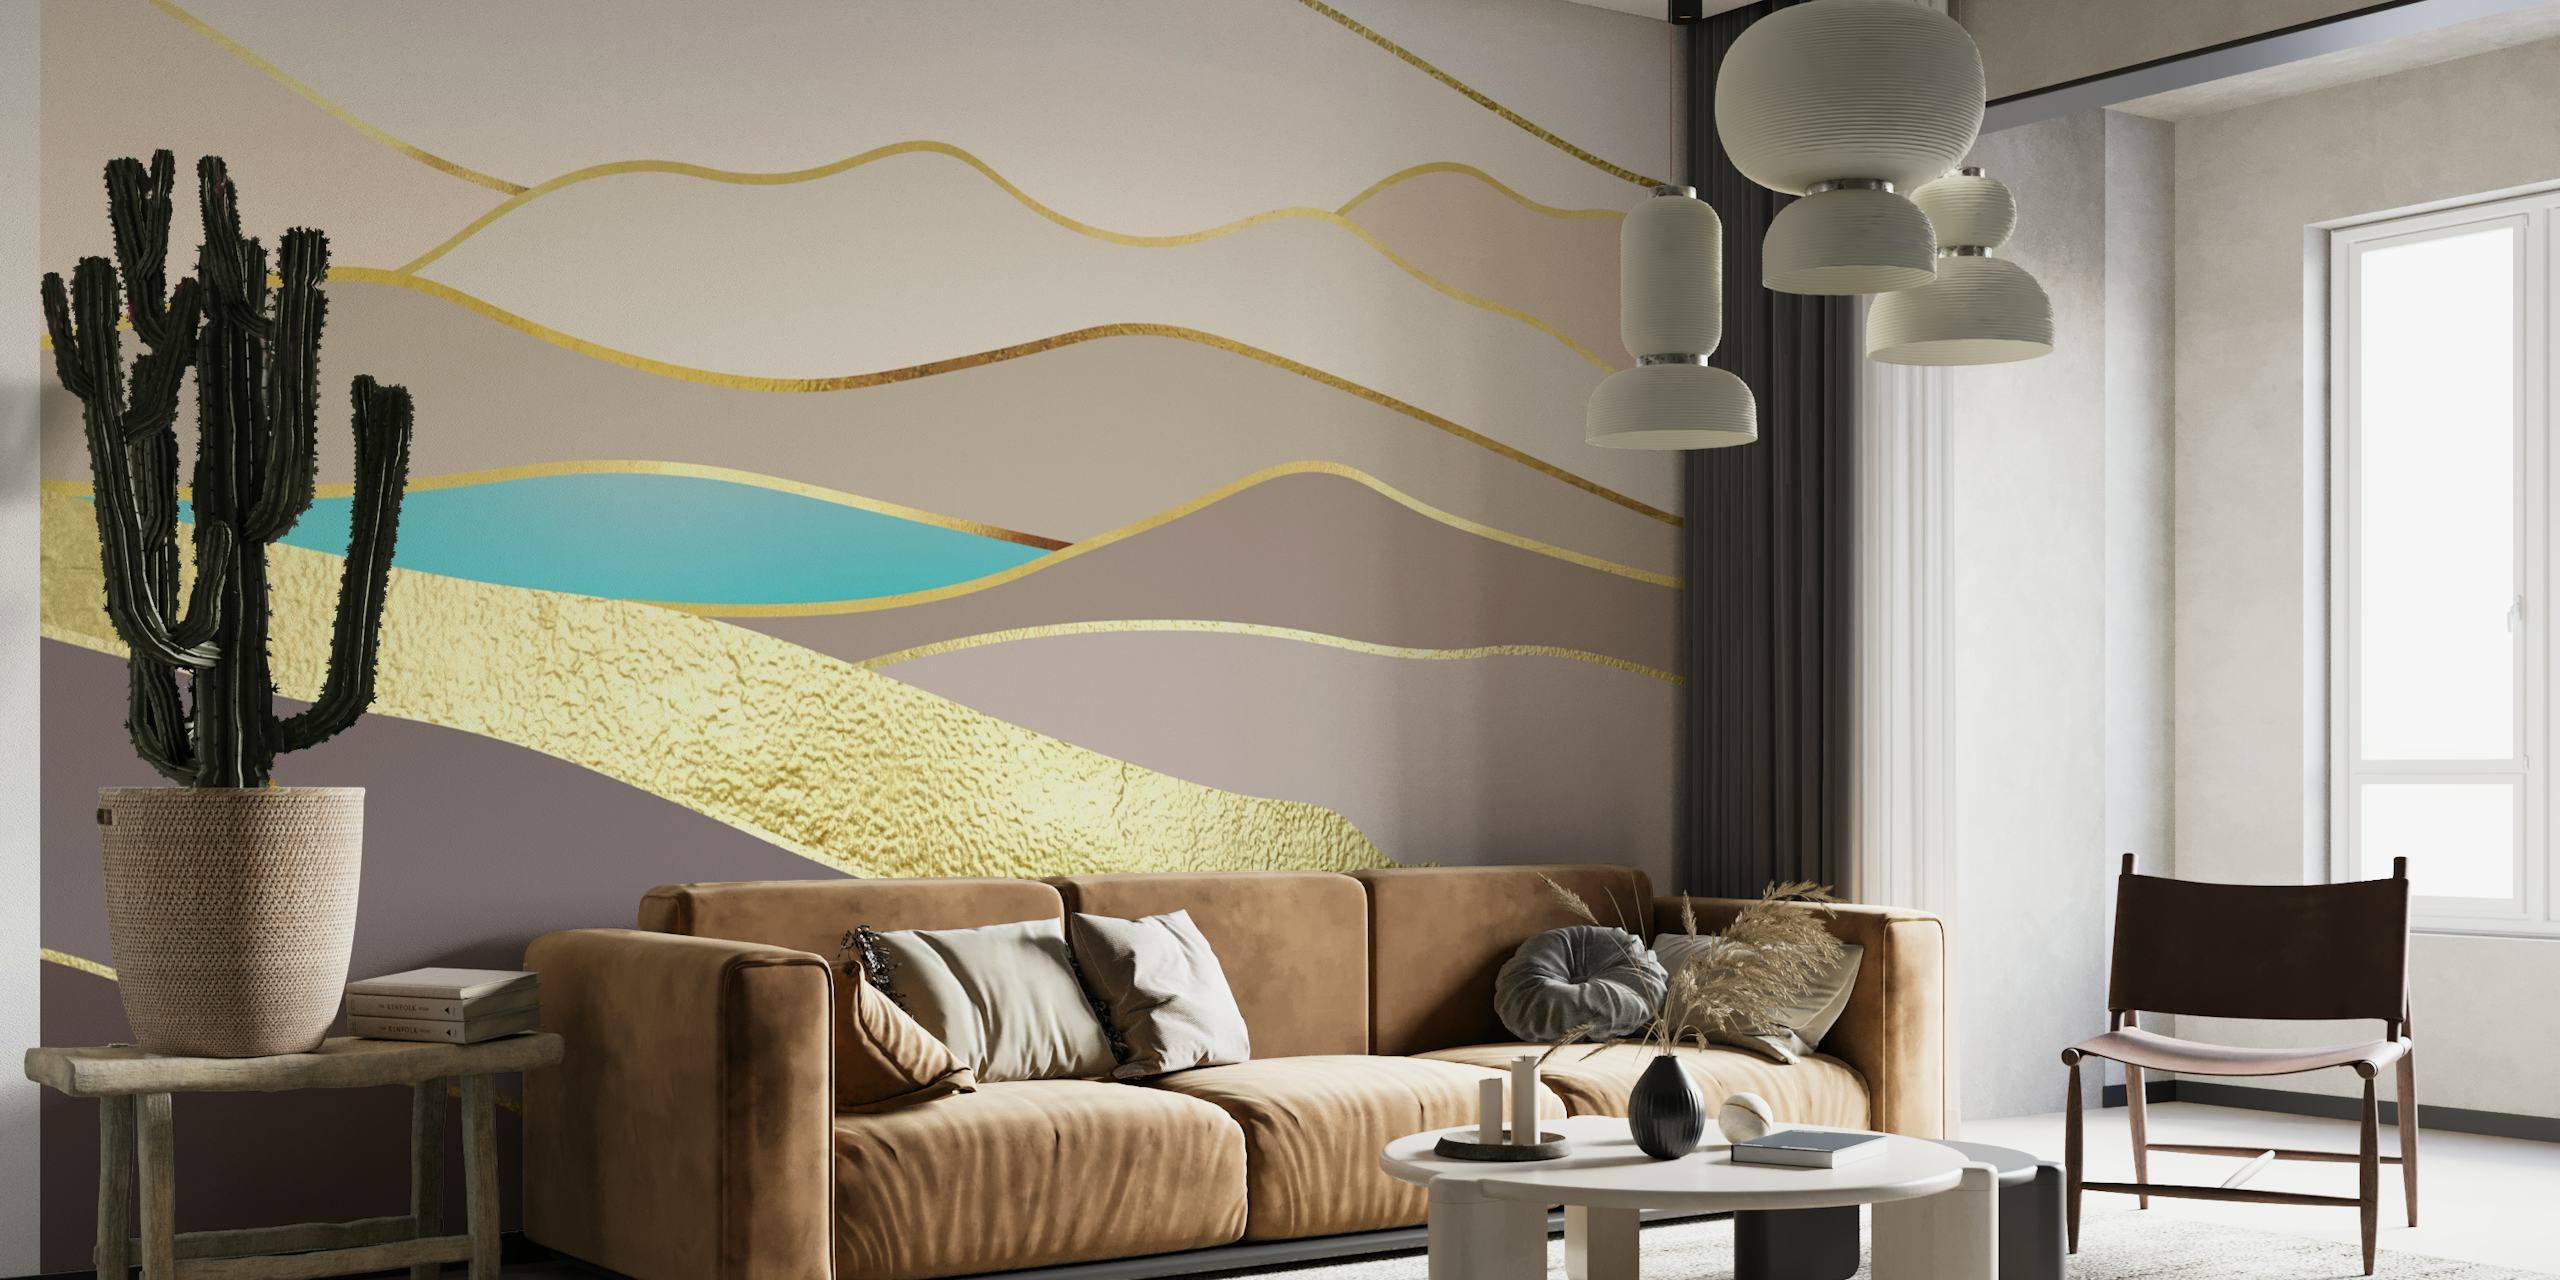 Mural de pared abstracto con un paisaje tranquilo, con suaves pendientes y detalles en oro metálico